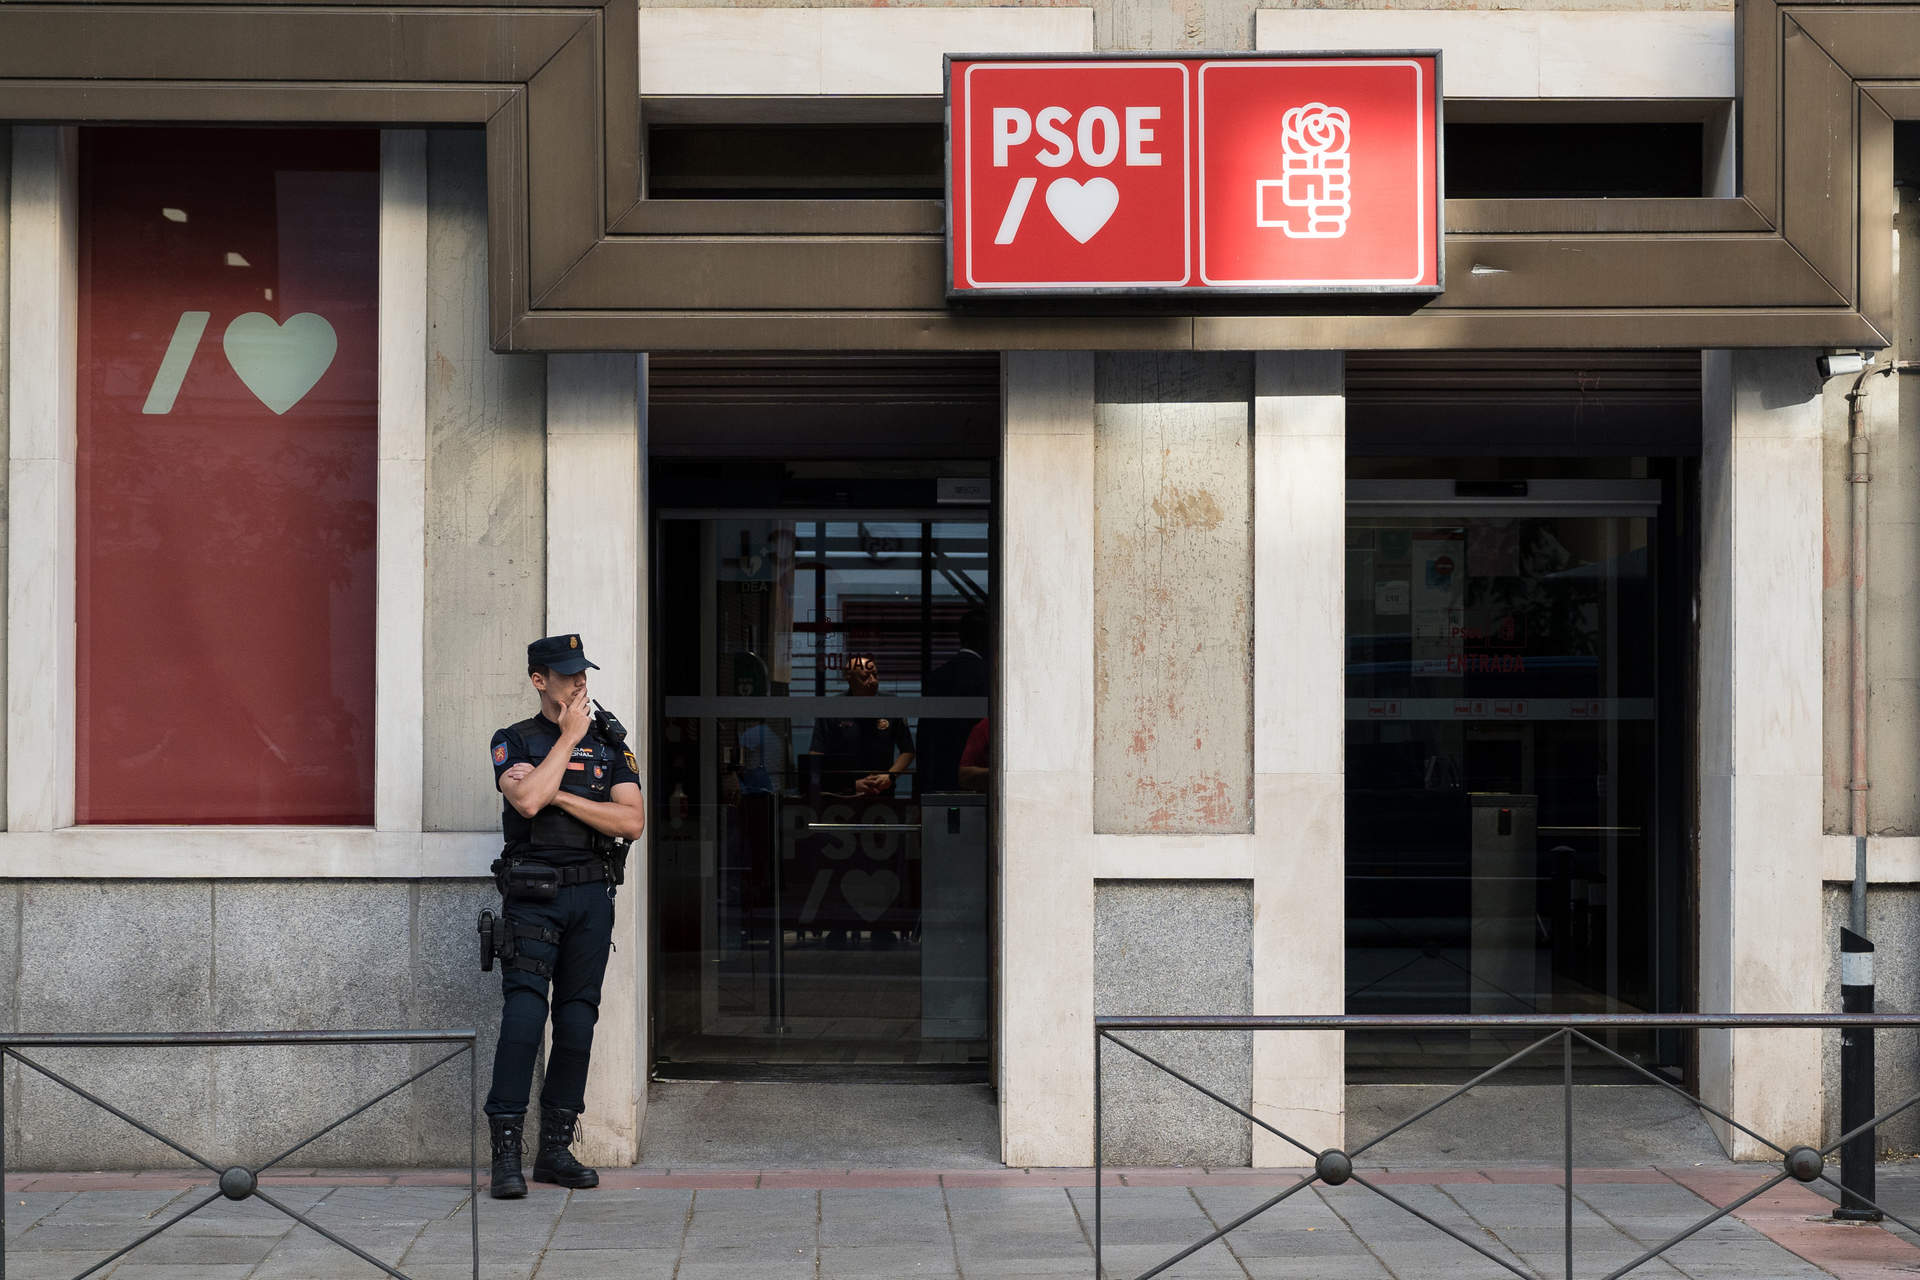 El PSOE niega que exista un acuerdo sobre amnistía, como afirmó Junqueras y enmarca sus palabras en la pugna con Junts